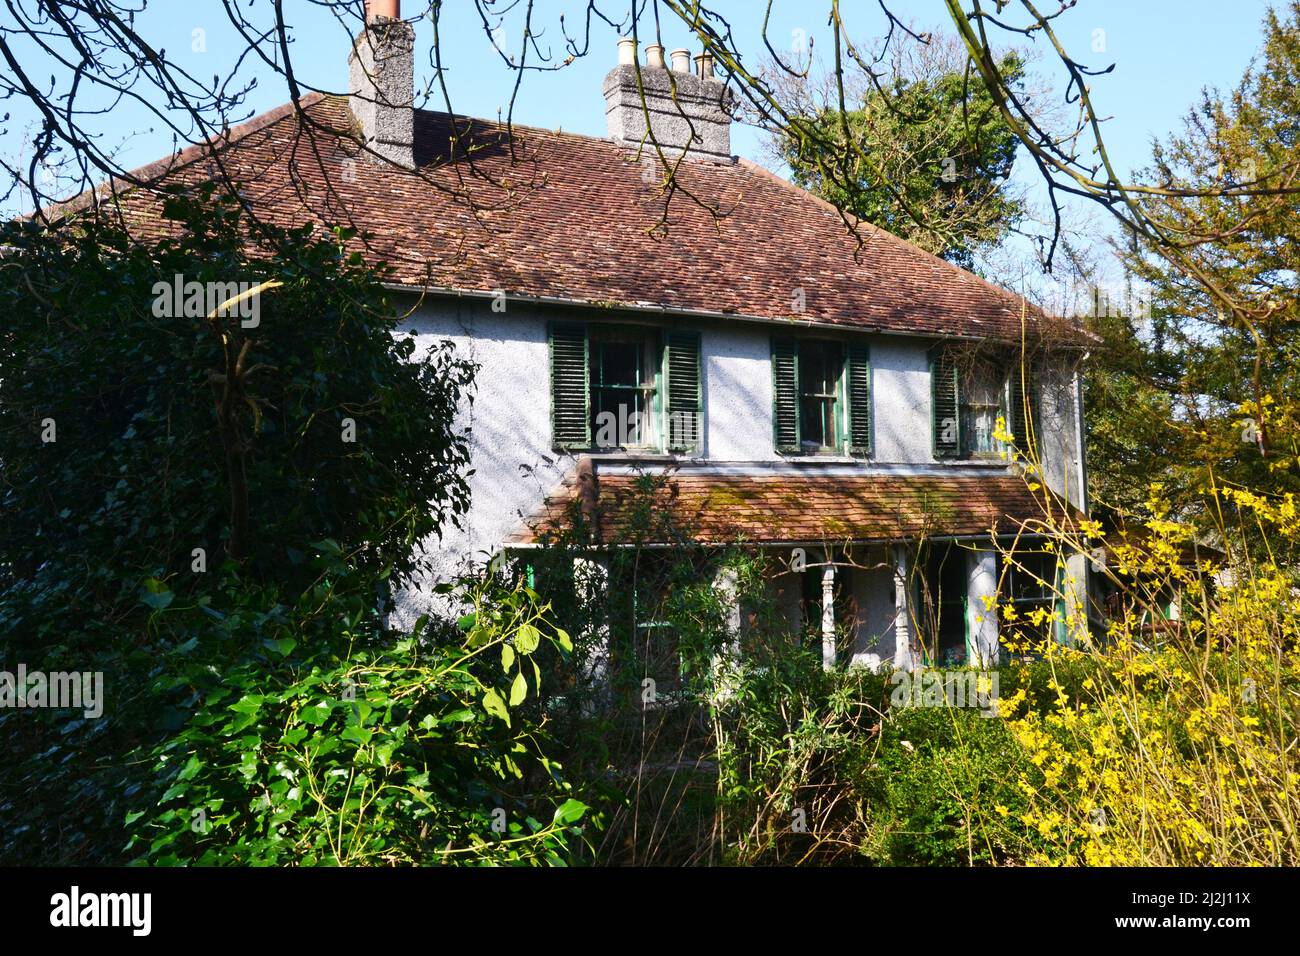 Ramshackle house in Bledlow, Buckinghamshire, England, UK Stock Photo